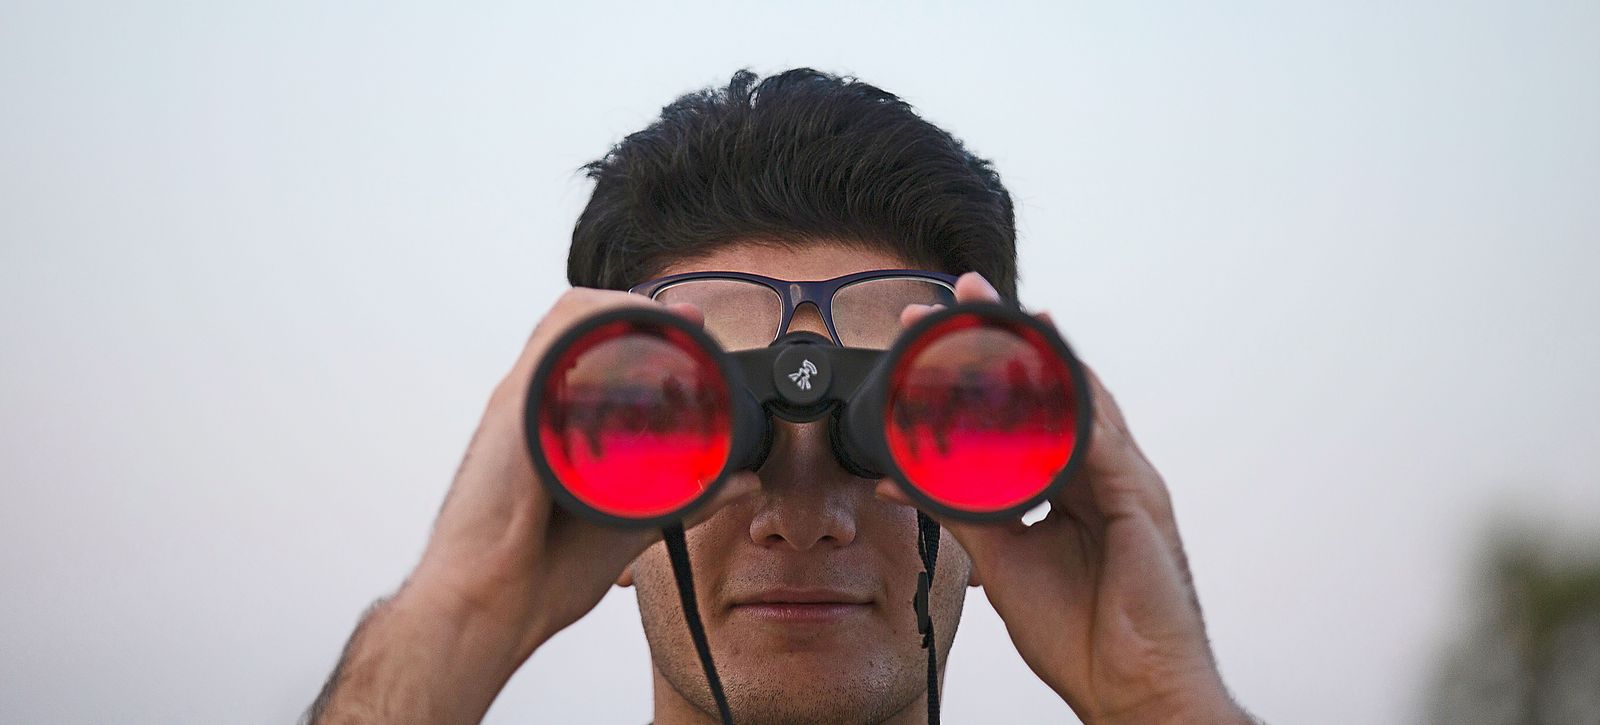 Ein Mann blickt durch ein großes Fernglas, auf den Gläsern spiegelt sich ein roter Himmel.